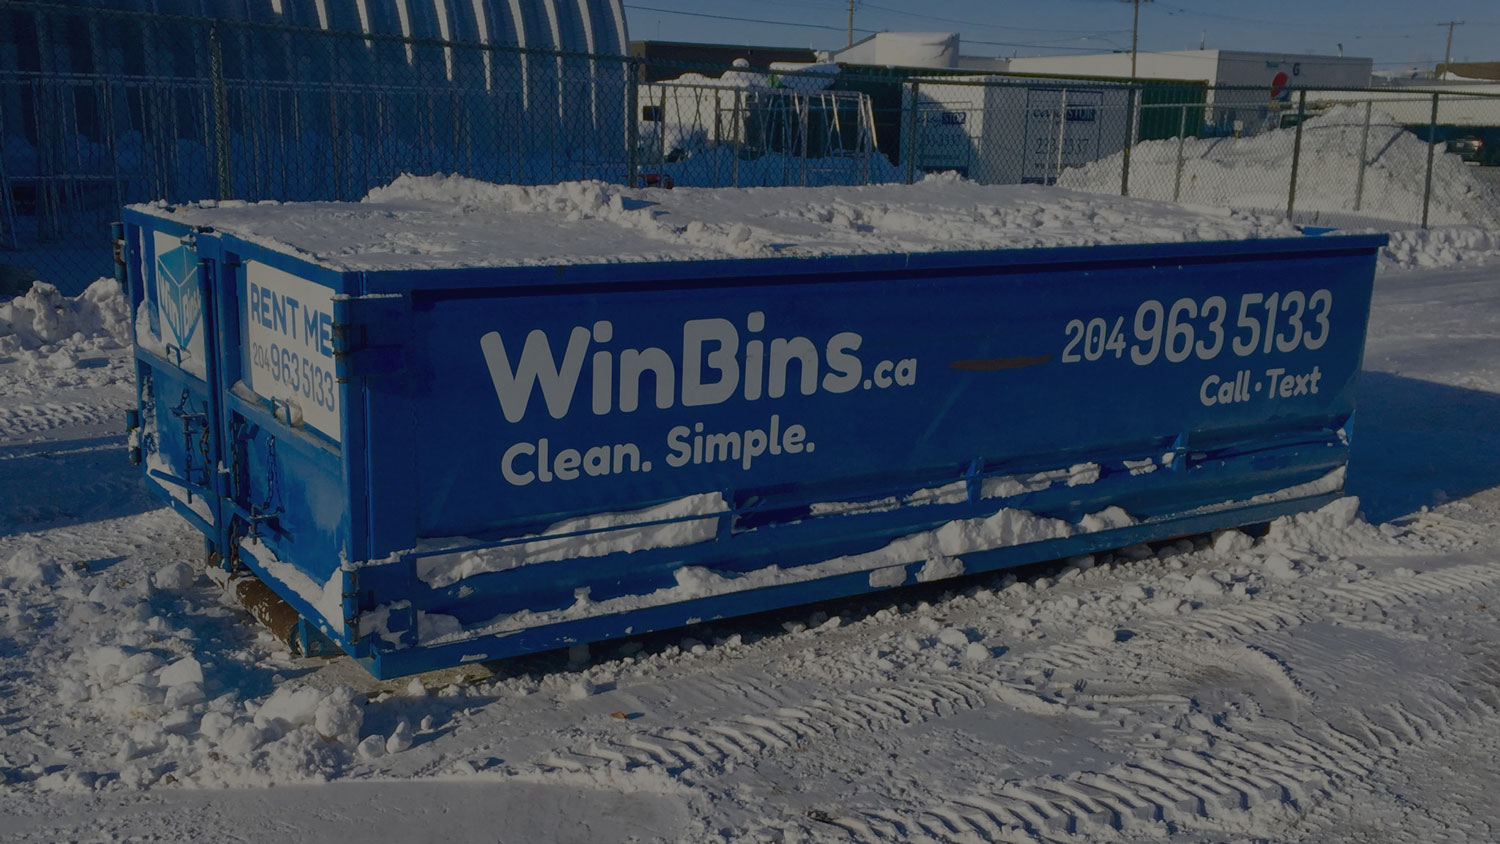 Winnipeg Bin & Dumpster Rentals by WinBins - win bins winnipeg bin and dumpster rental use 3.2eeafecf